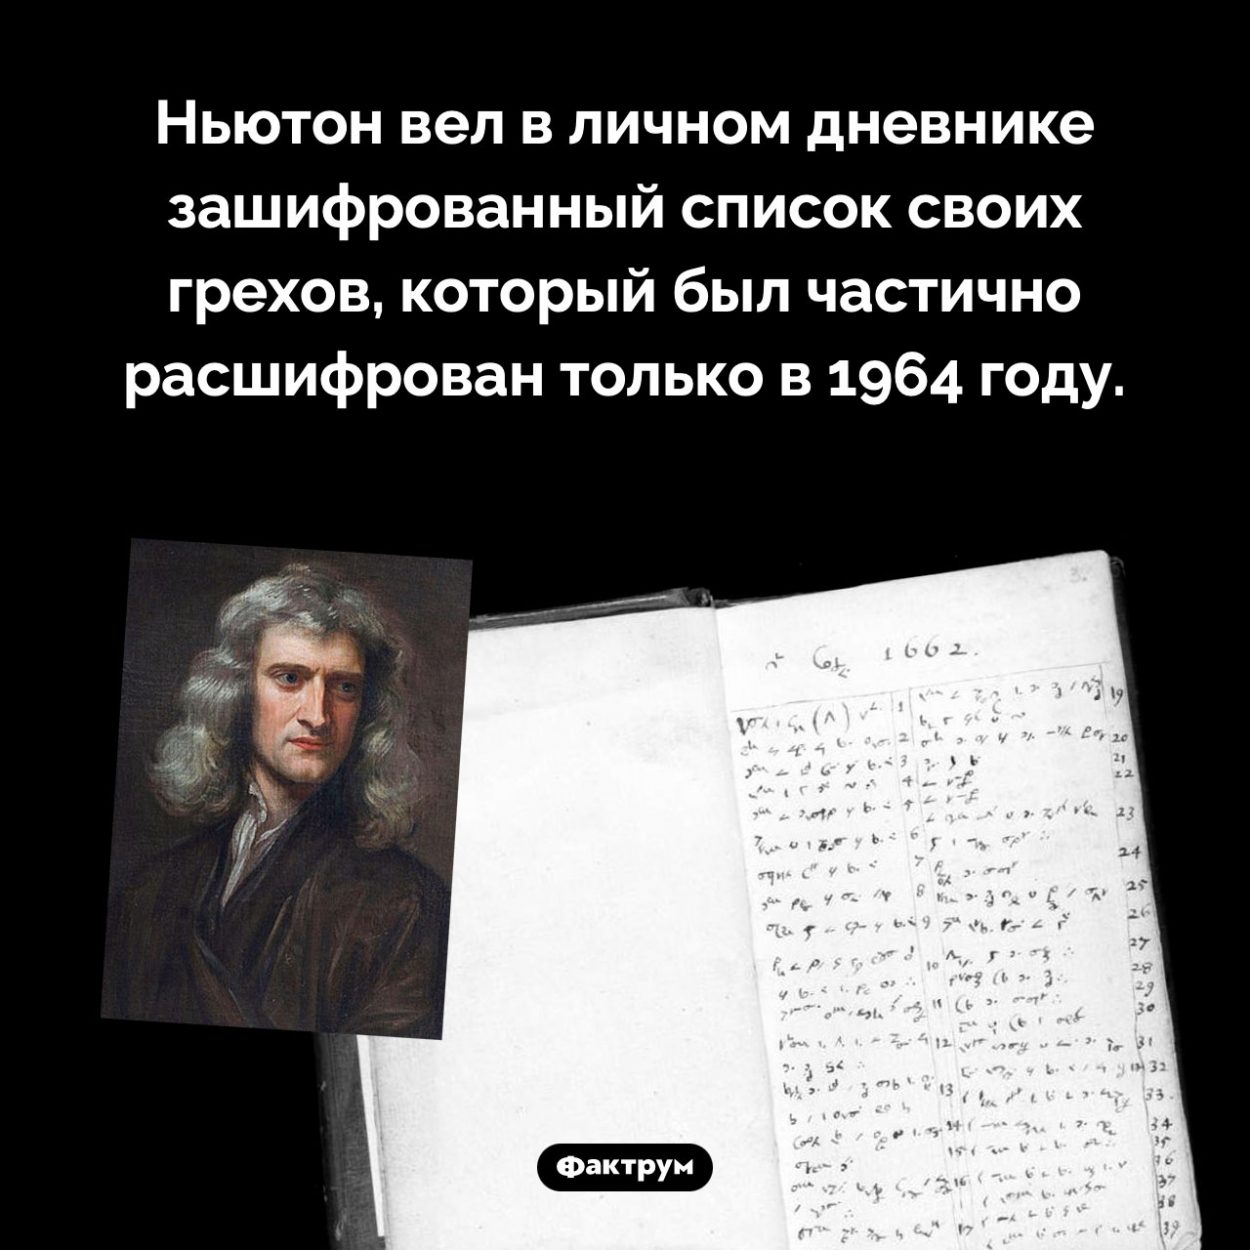 Ньютон записывал свои грехи. Ньютон вел в личном дневнике зашифрованный список своих грехов, который был частично расшифрован только в 1964 году.